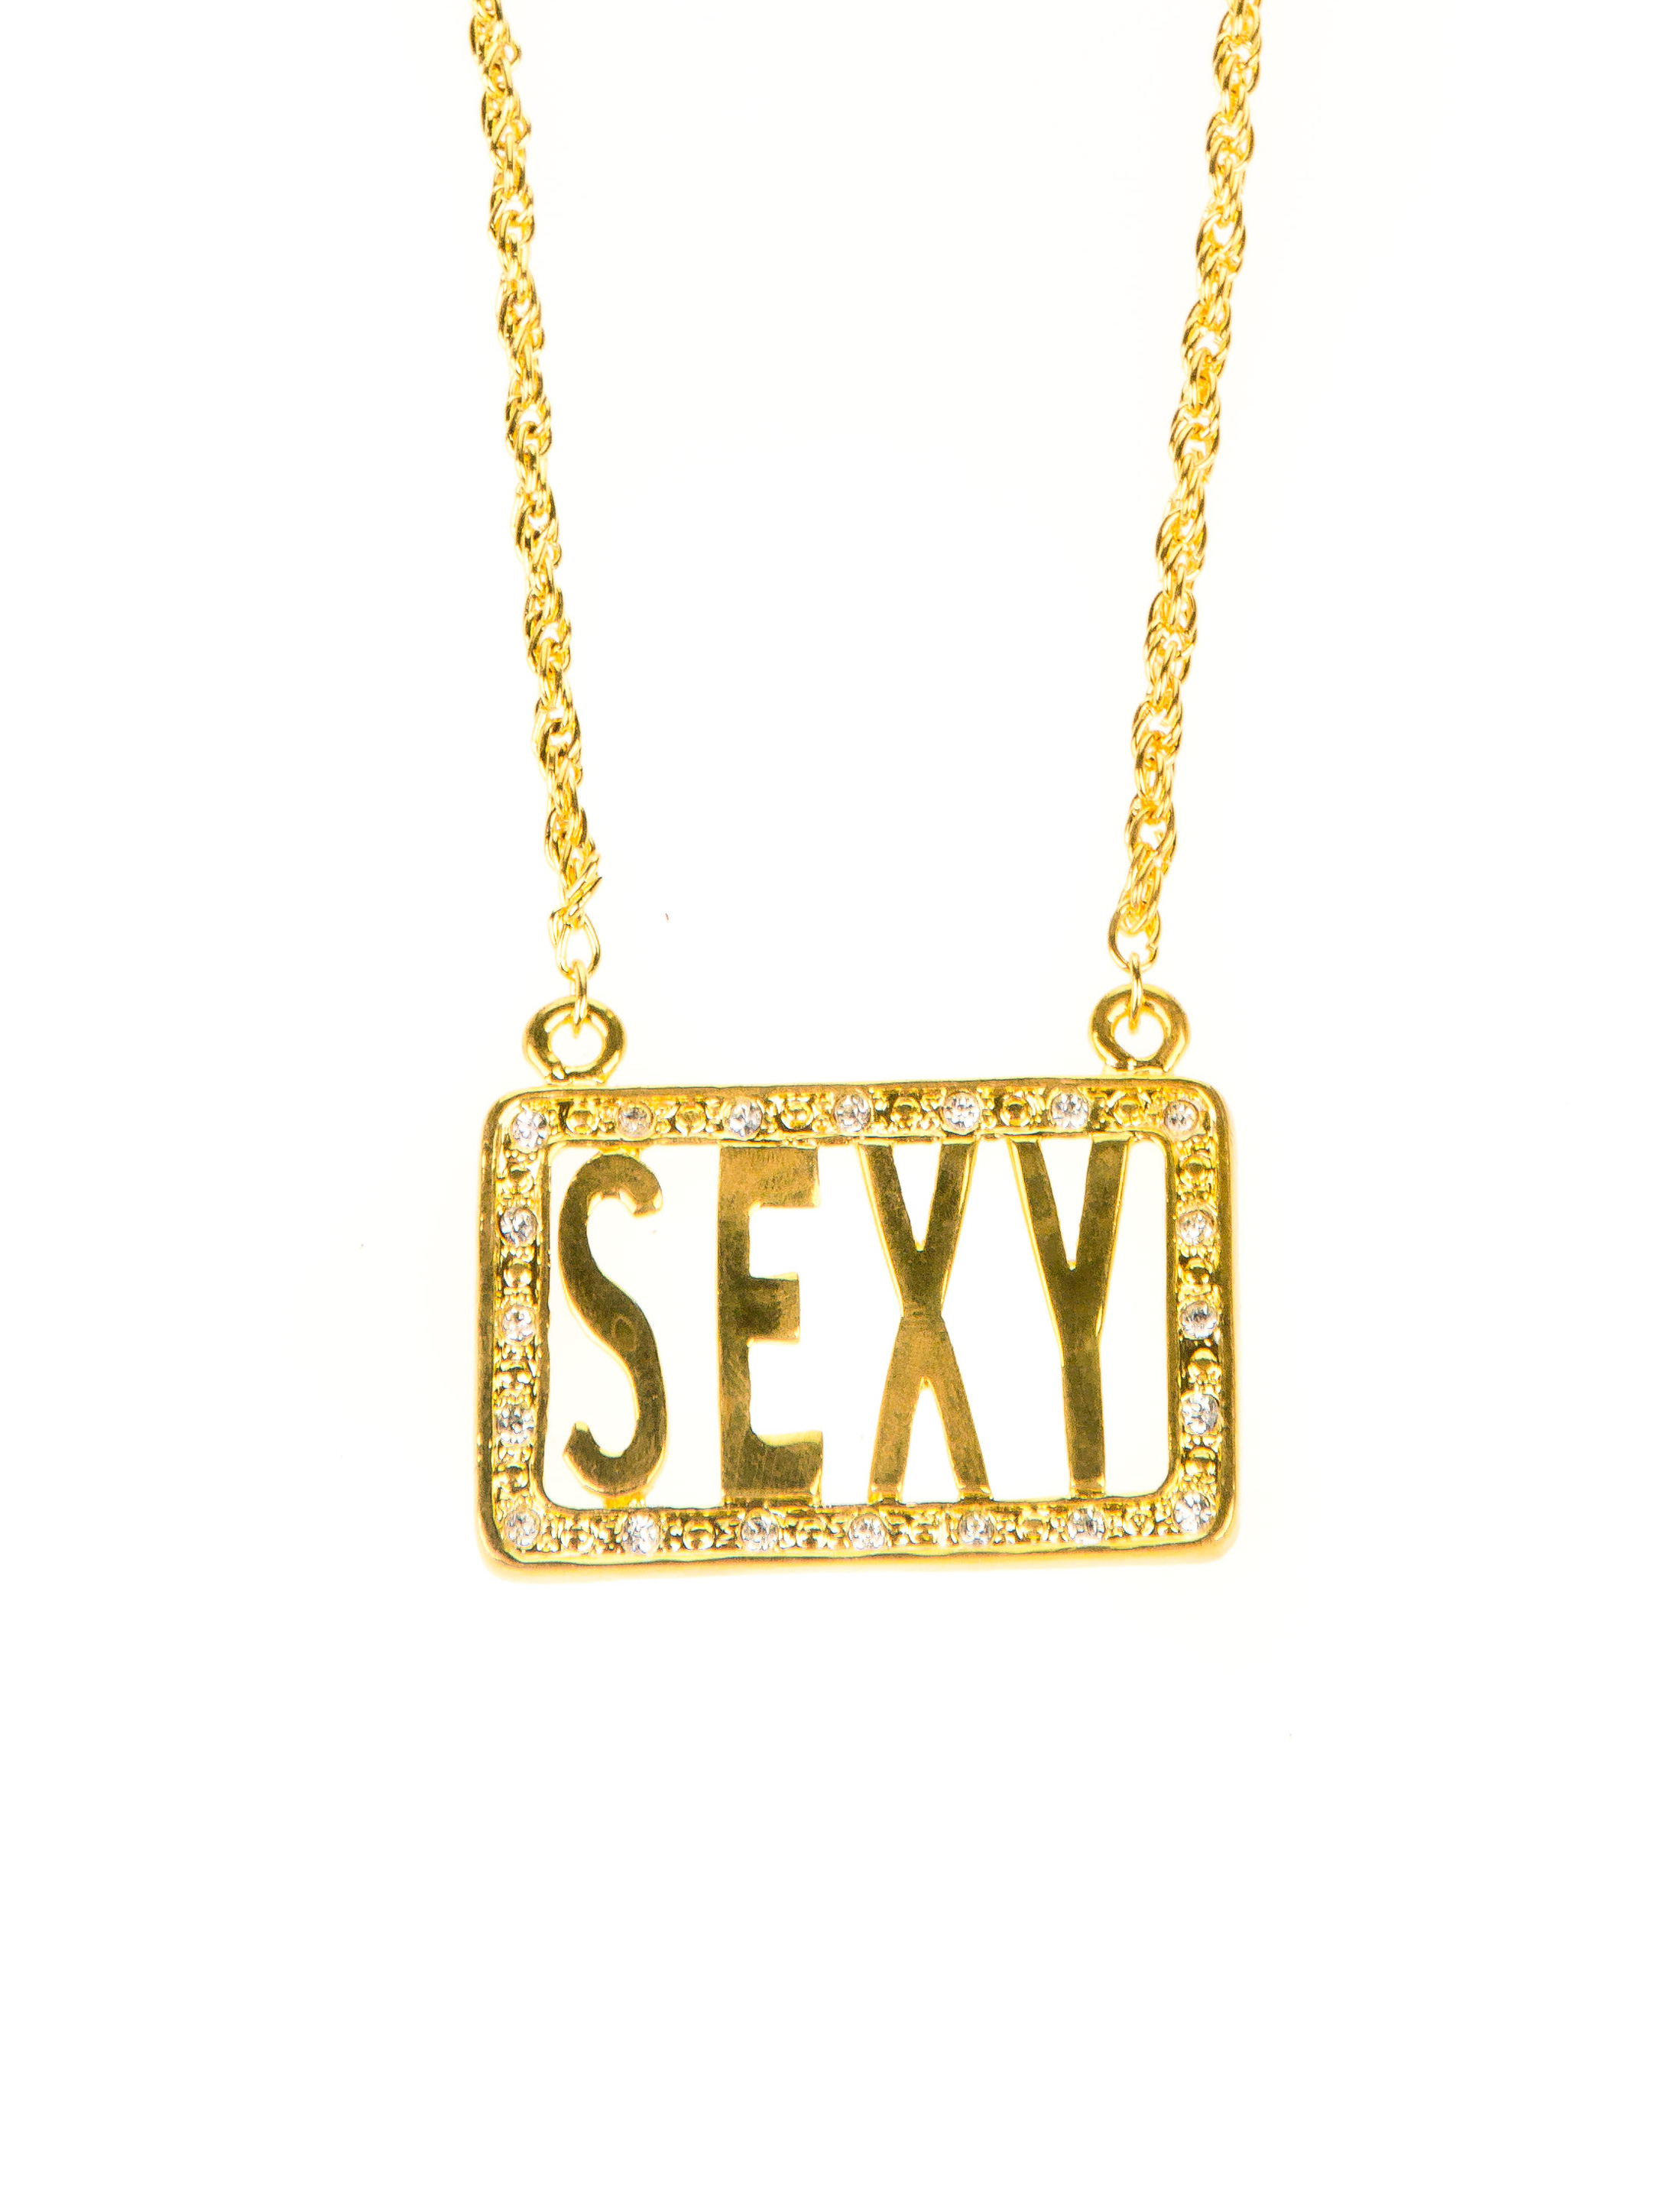 Halskette Sexy gold